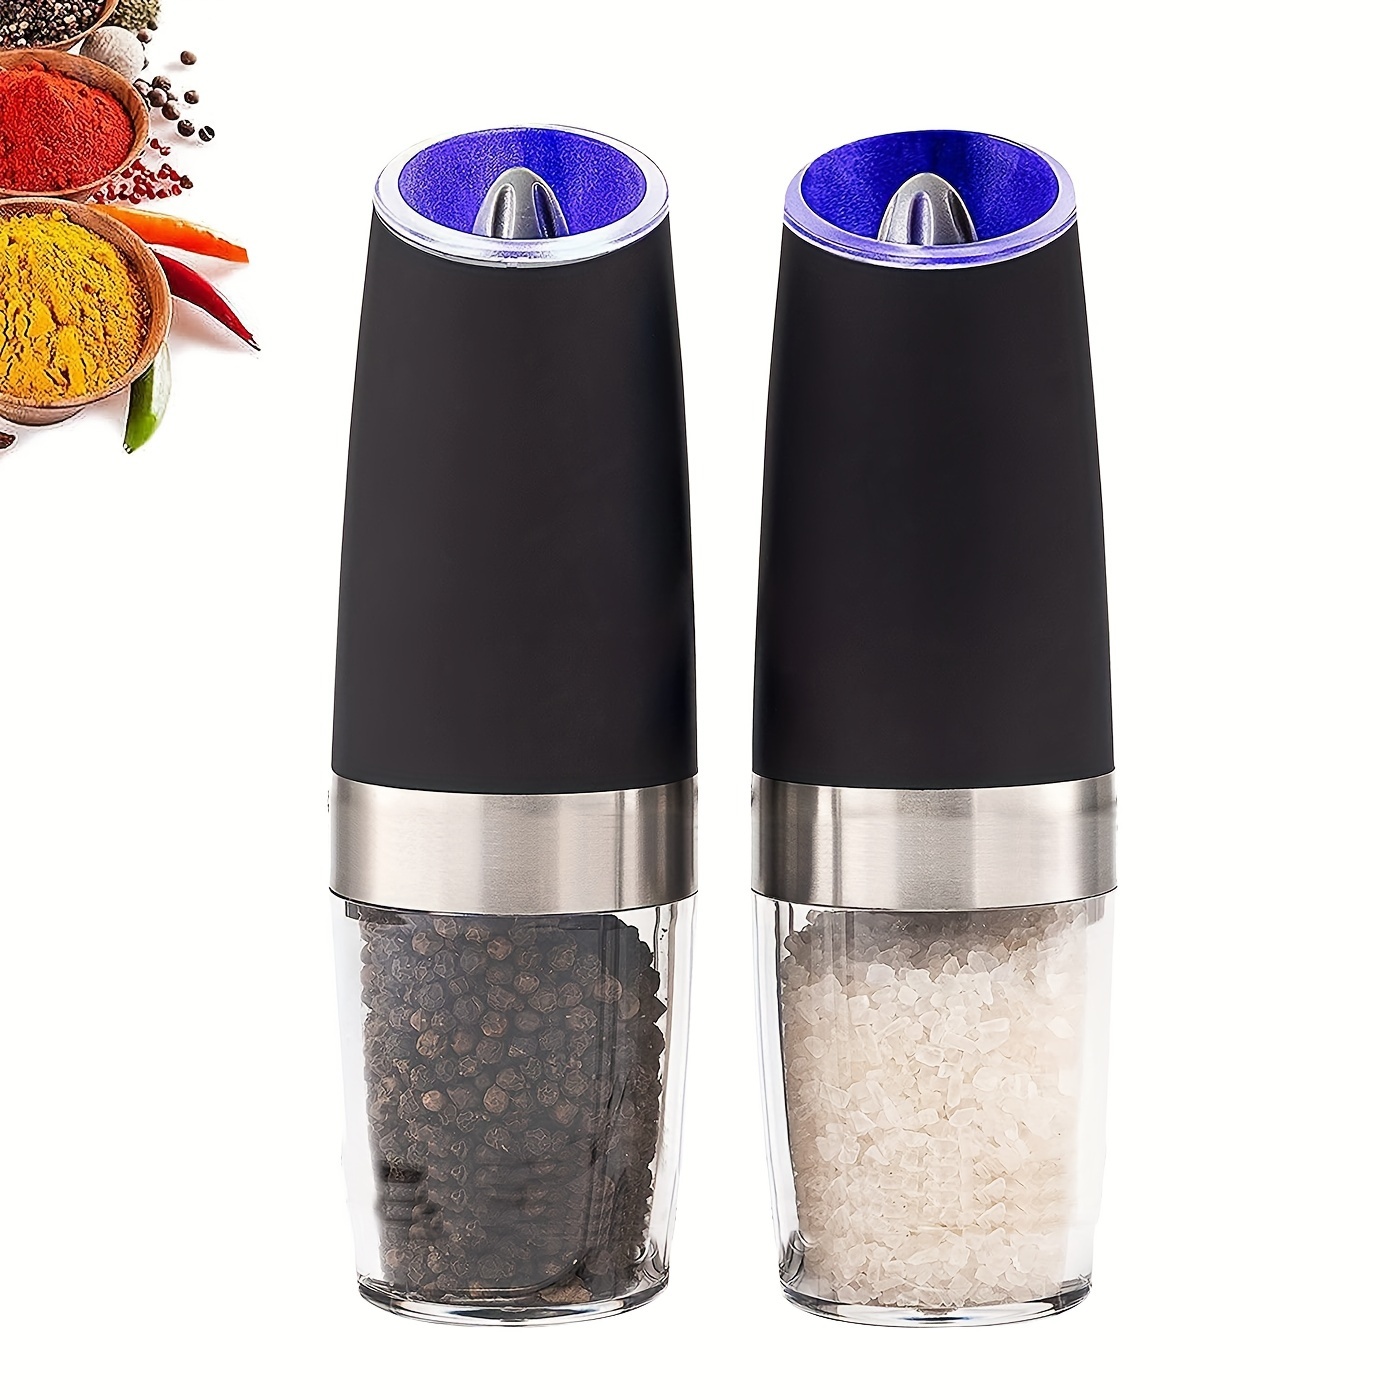 Automatic Gravity Electric Salt Pepper Grinder LED Set Adjustable  Coarseness New